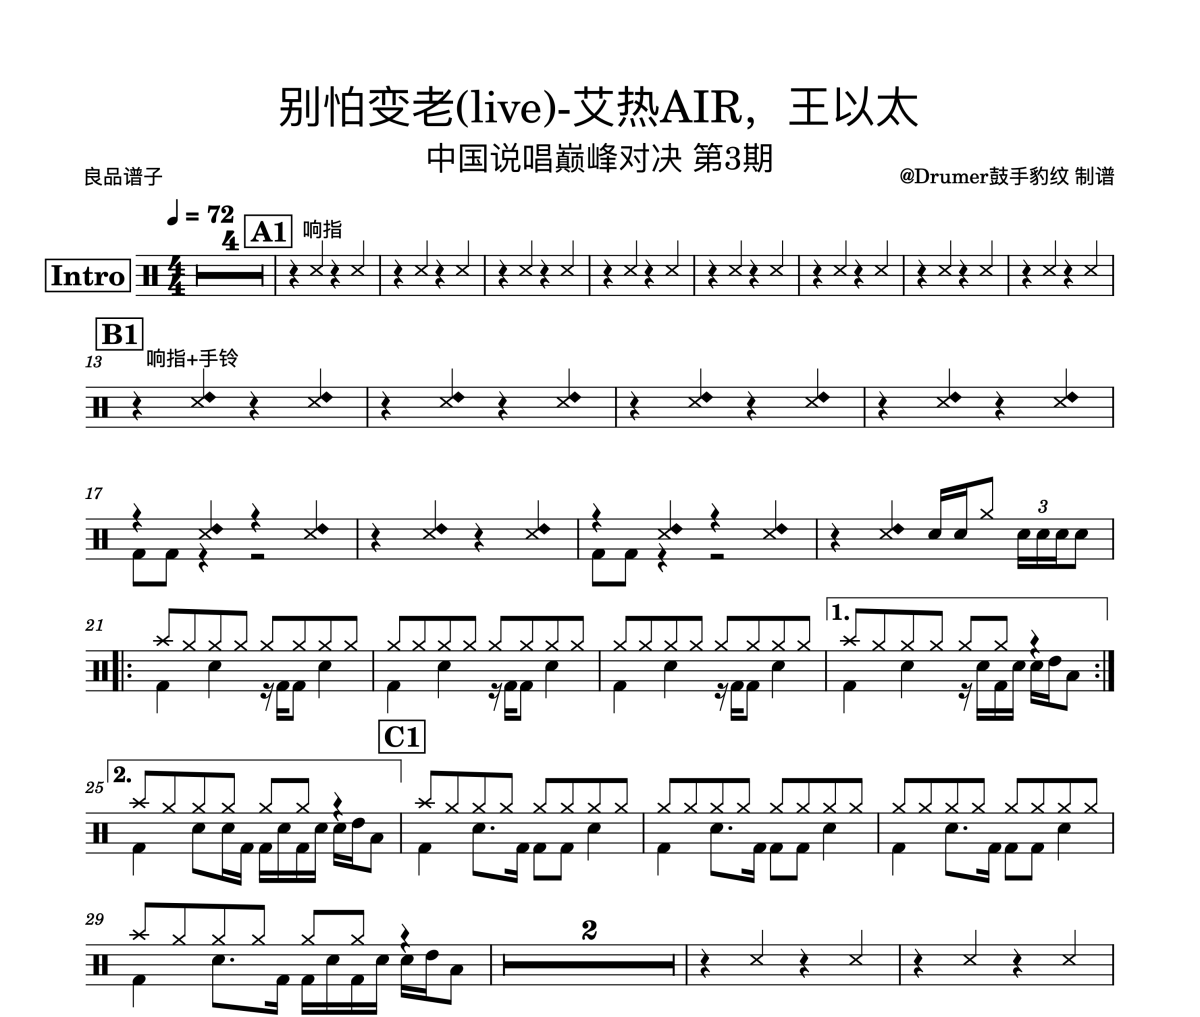 艾热AIR/王以太-别怕变老(live)-中国说唱巅峰对决 第3期架子鼓|爵士鼓|鼓谱